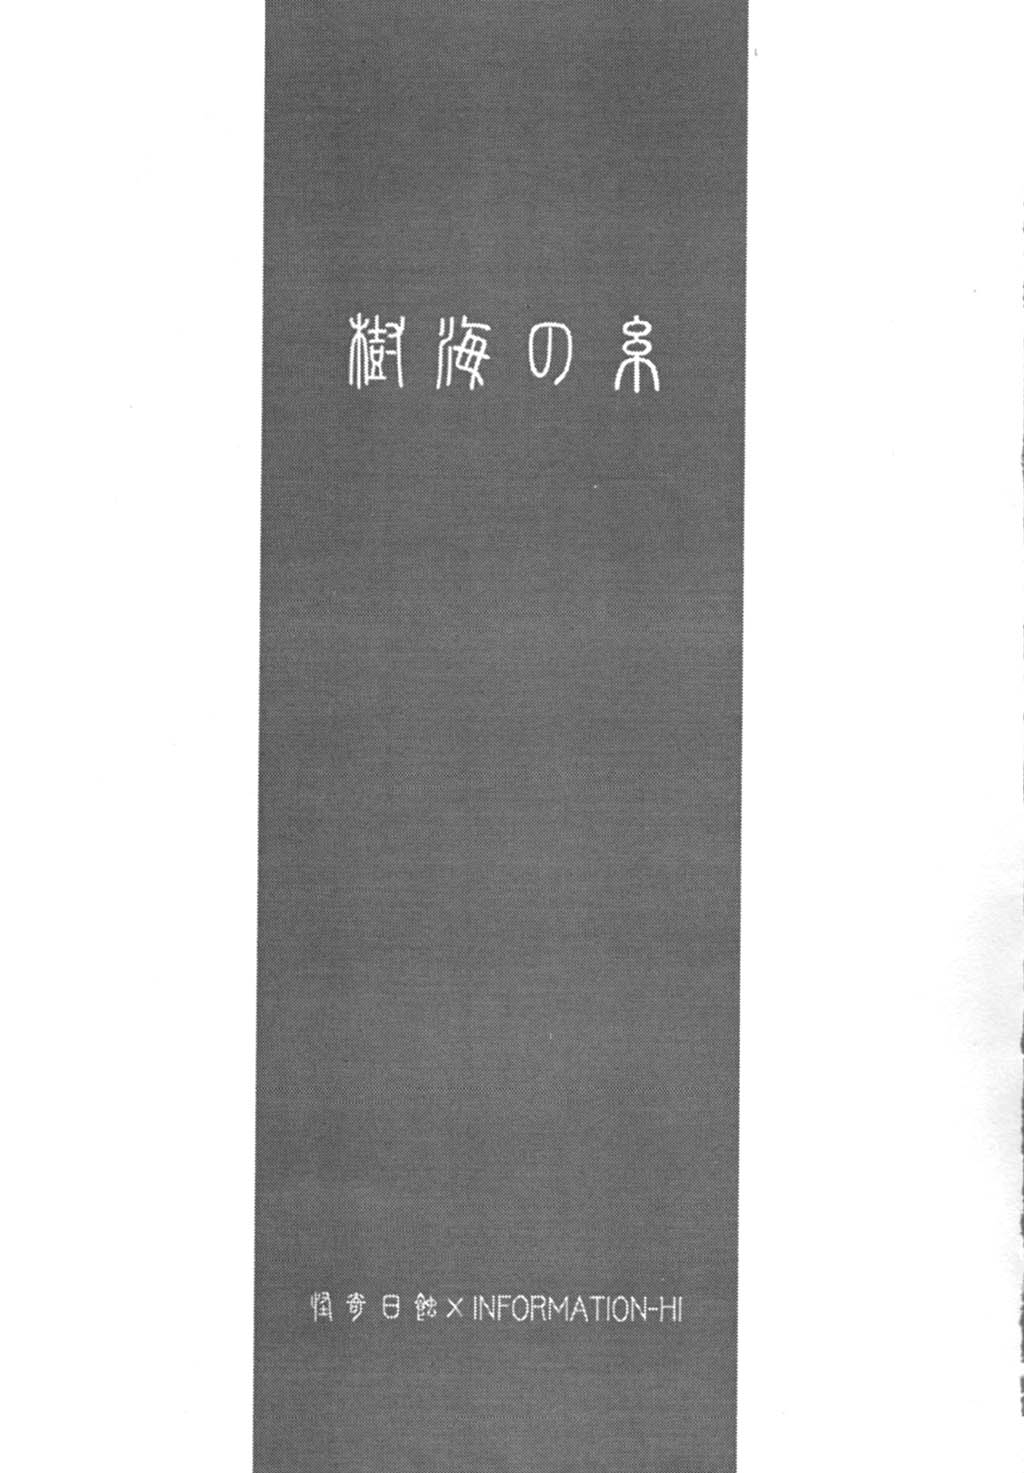 Tsukihime Only Book - Red Akiha{Tsukihime} 